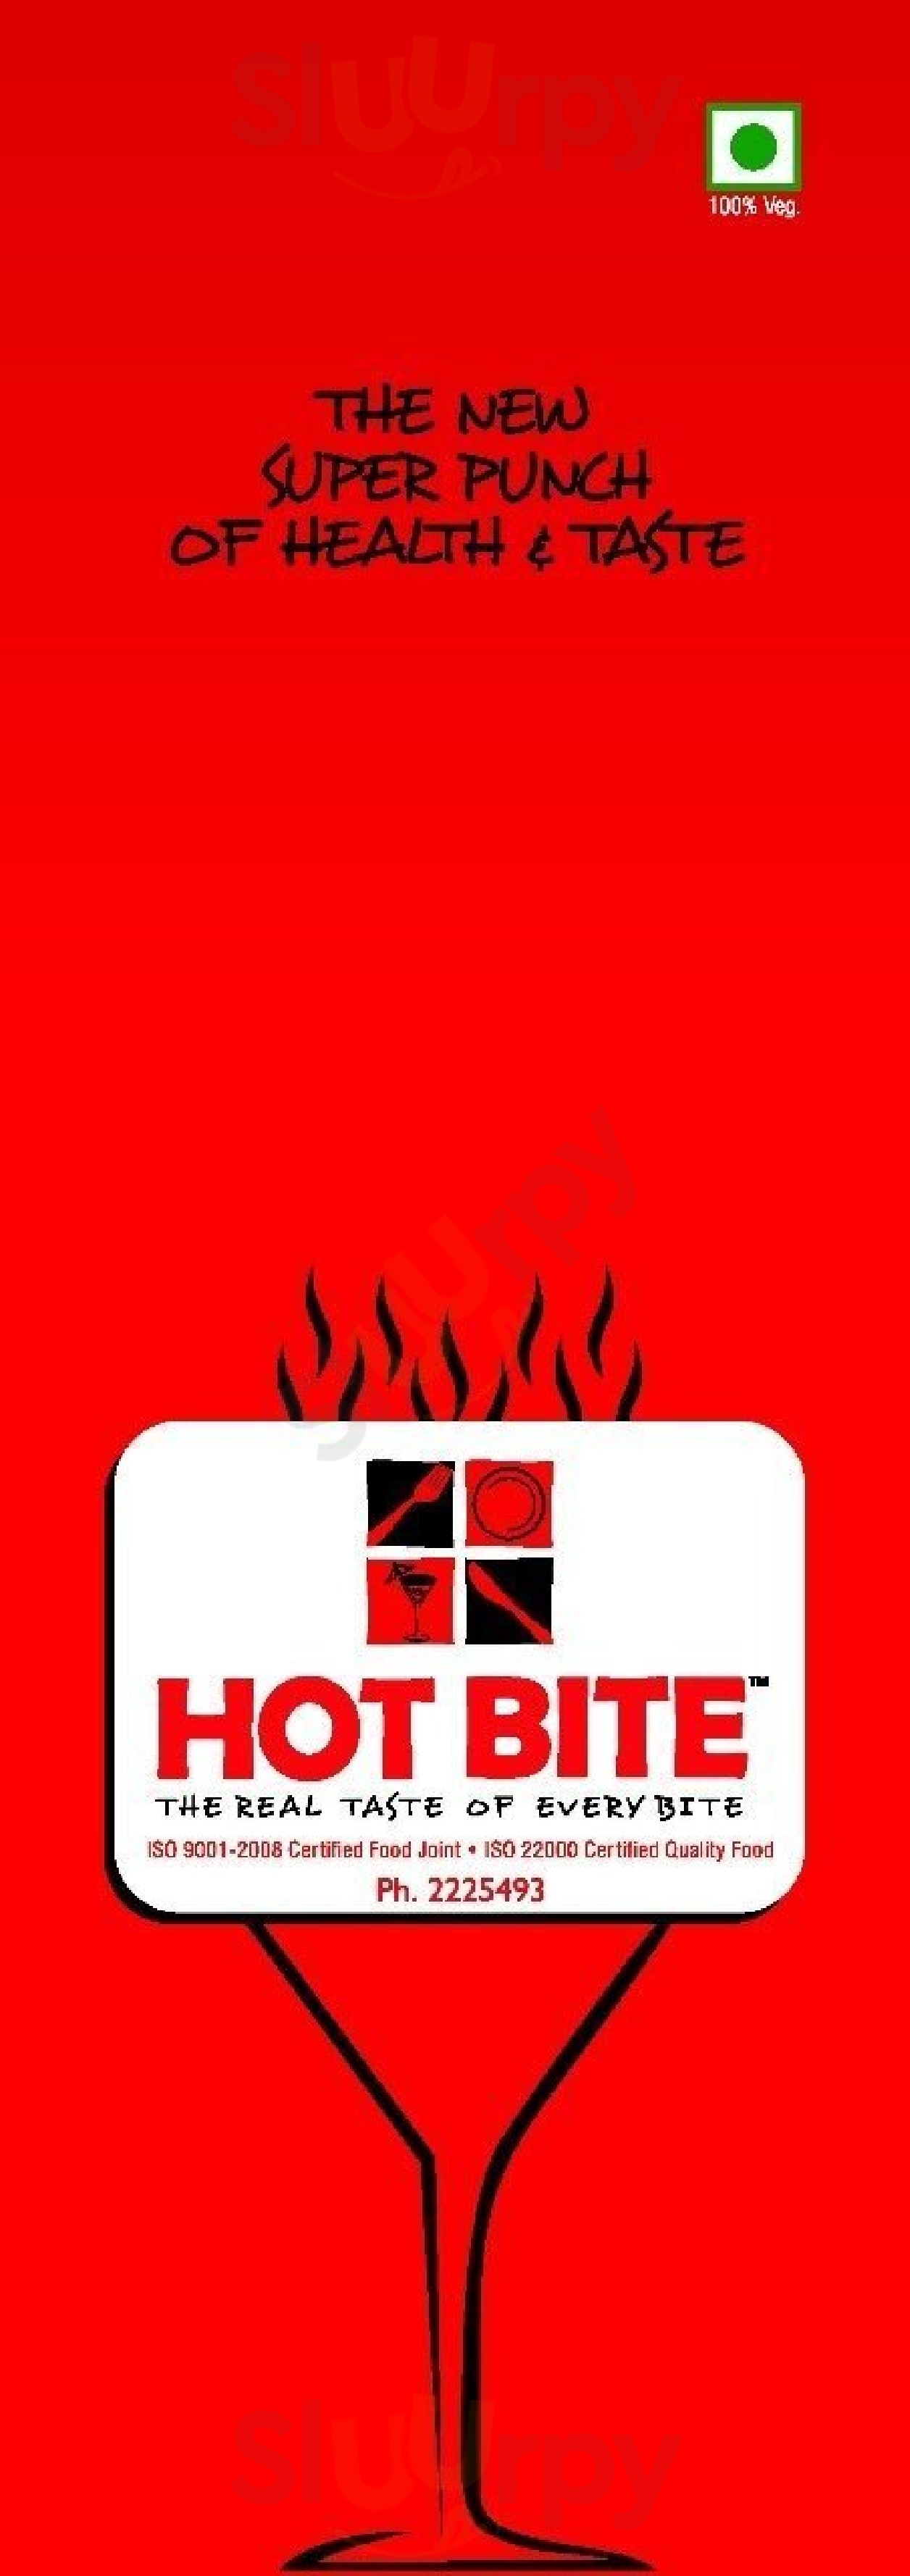 Hot Bite Vadodara Menu - 1